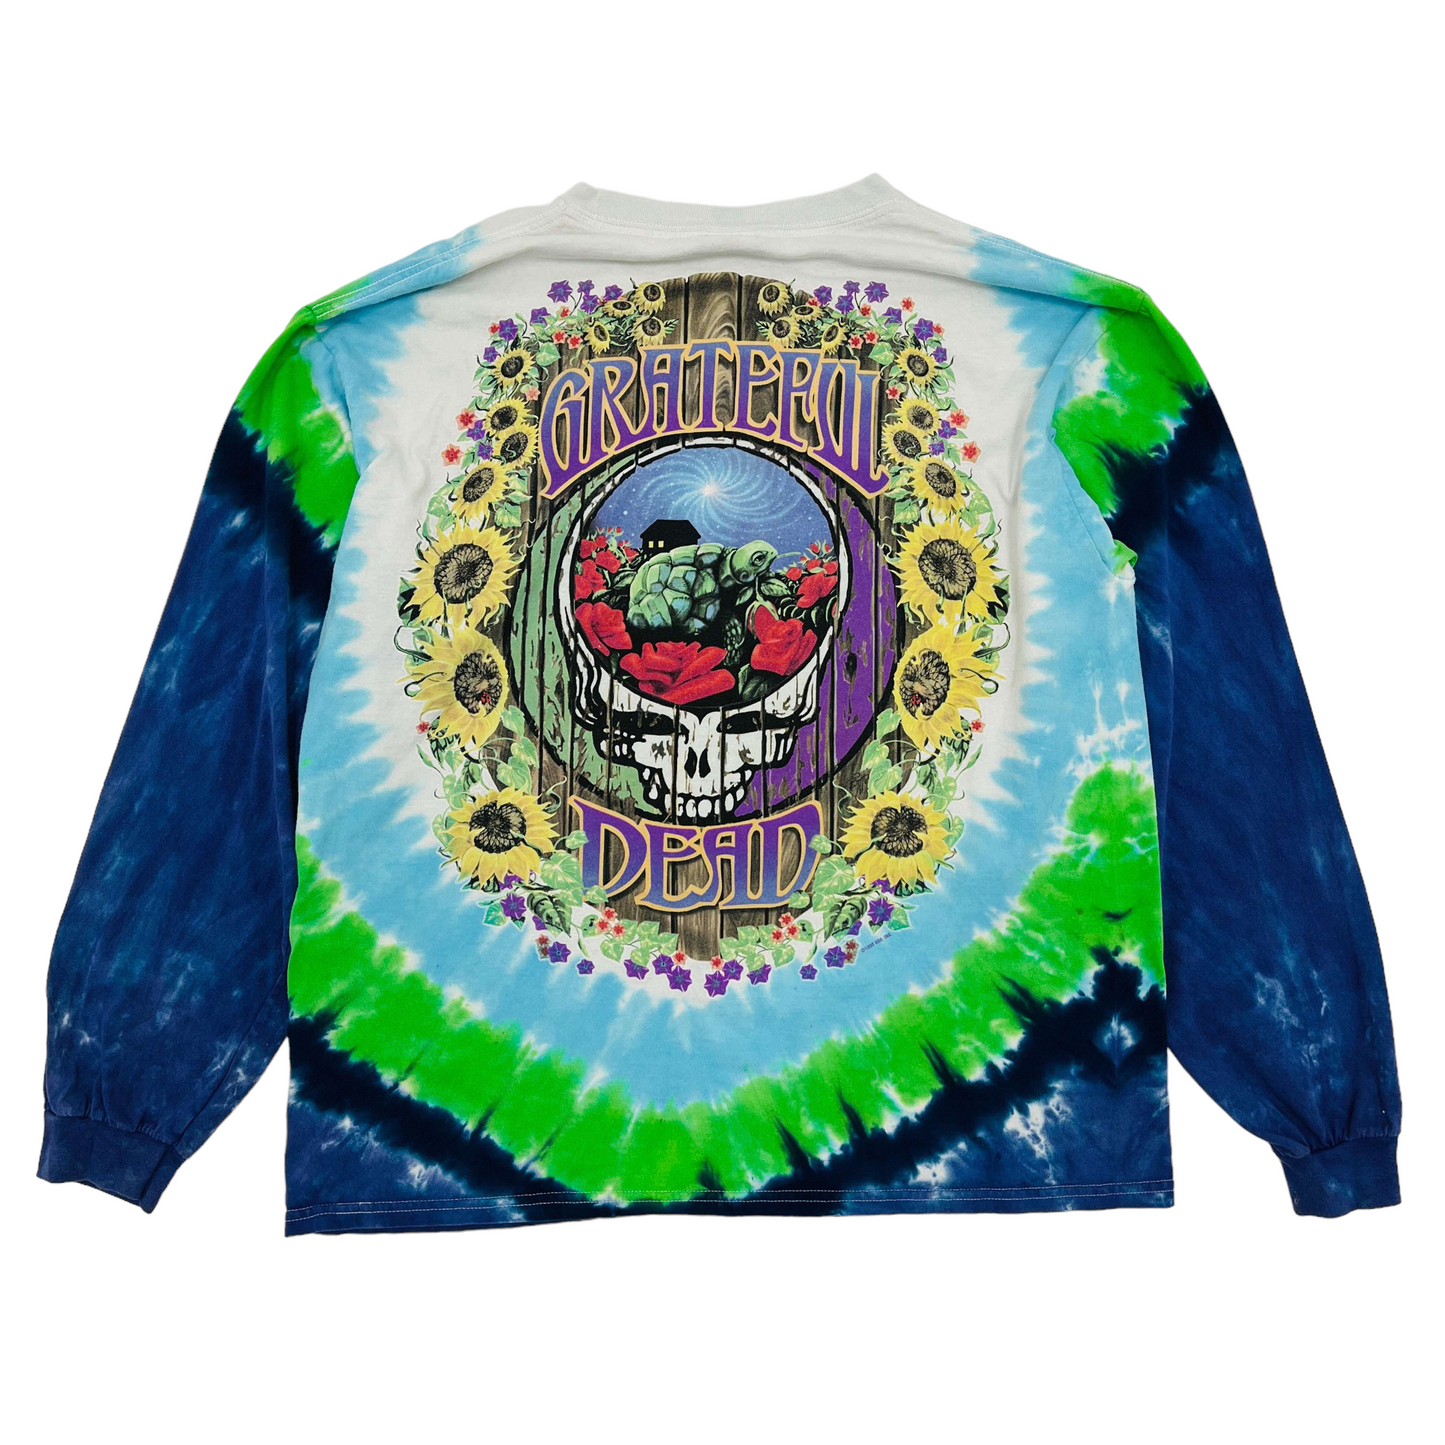 Vintage 90s Grateful Dead Tie Dye Rock Concert Tour T Shirt M -  Denmark